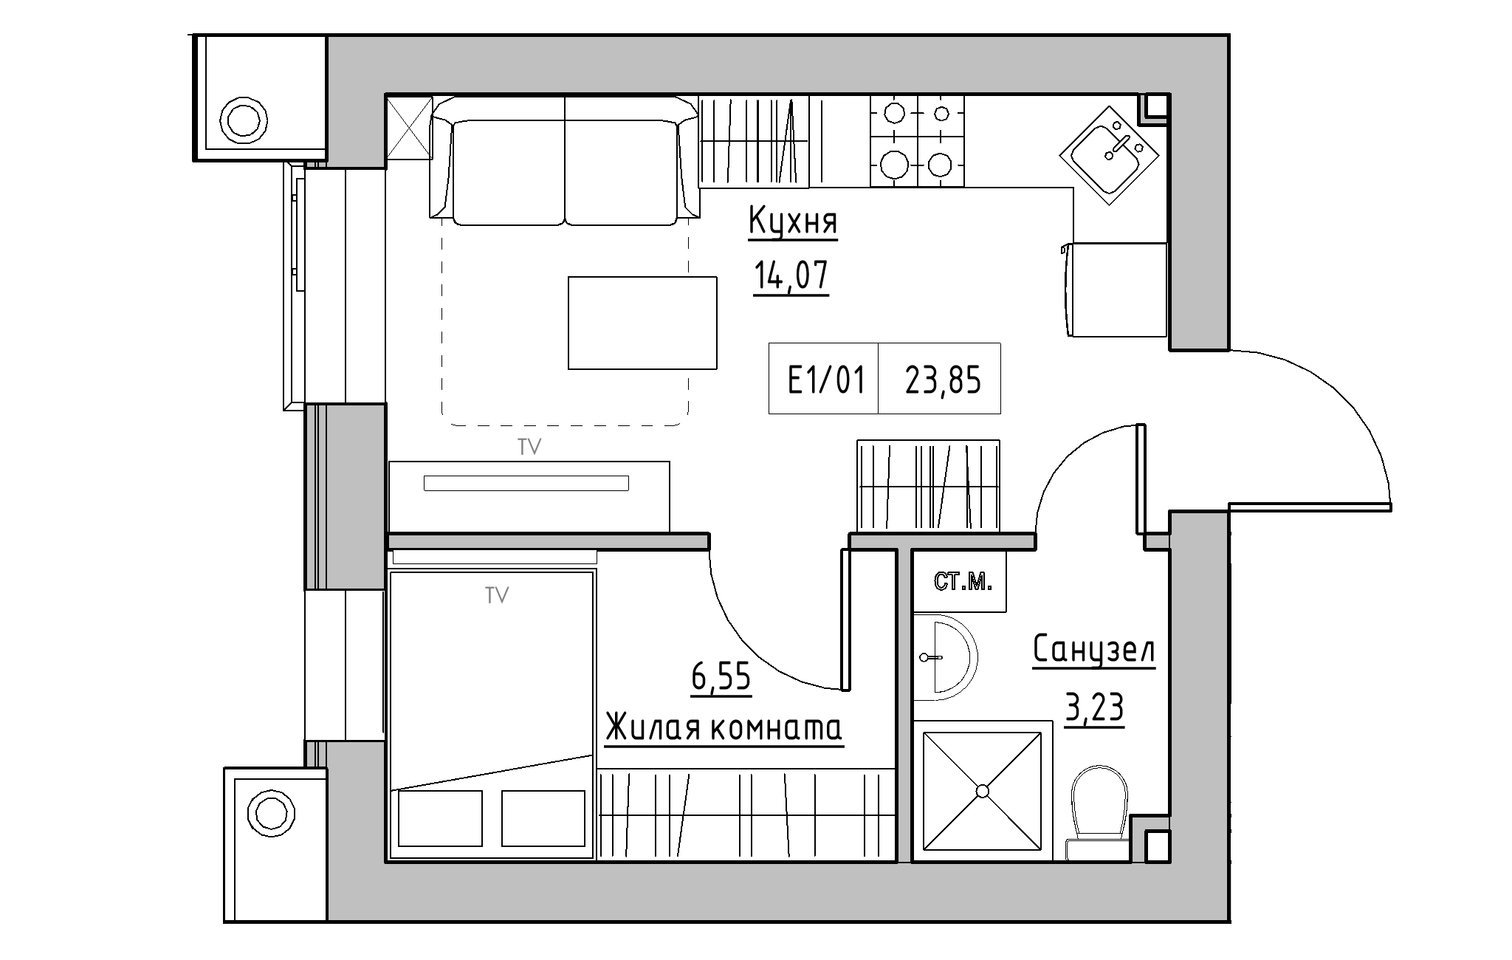 Планировка 1-к квартира площей 23.85м2, KS-013-05/0003.